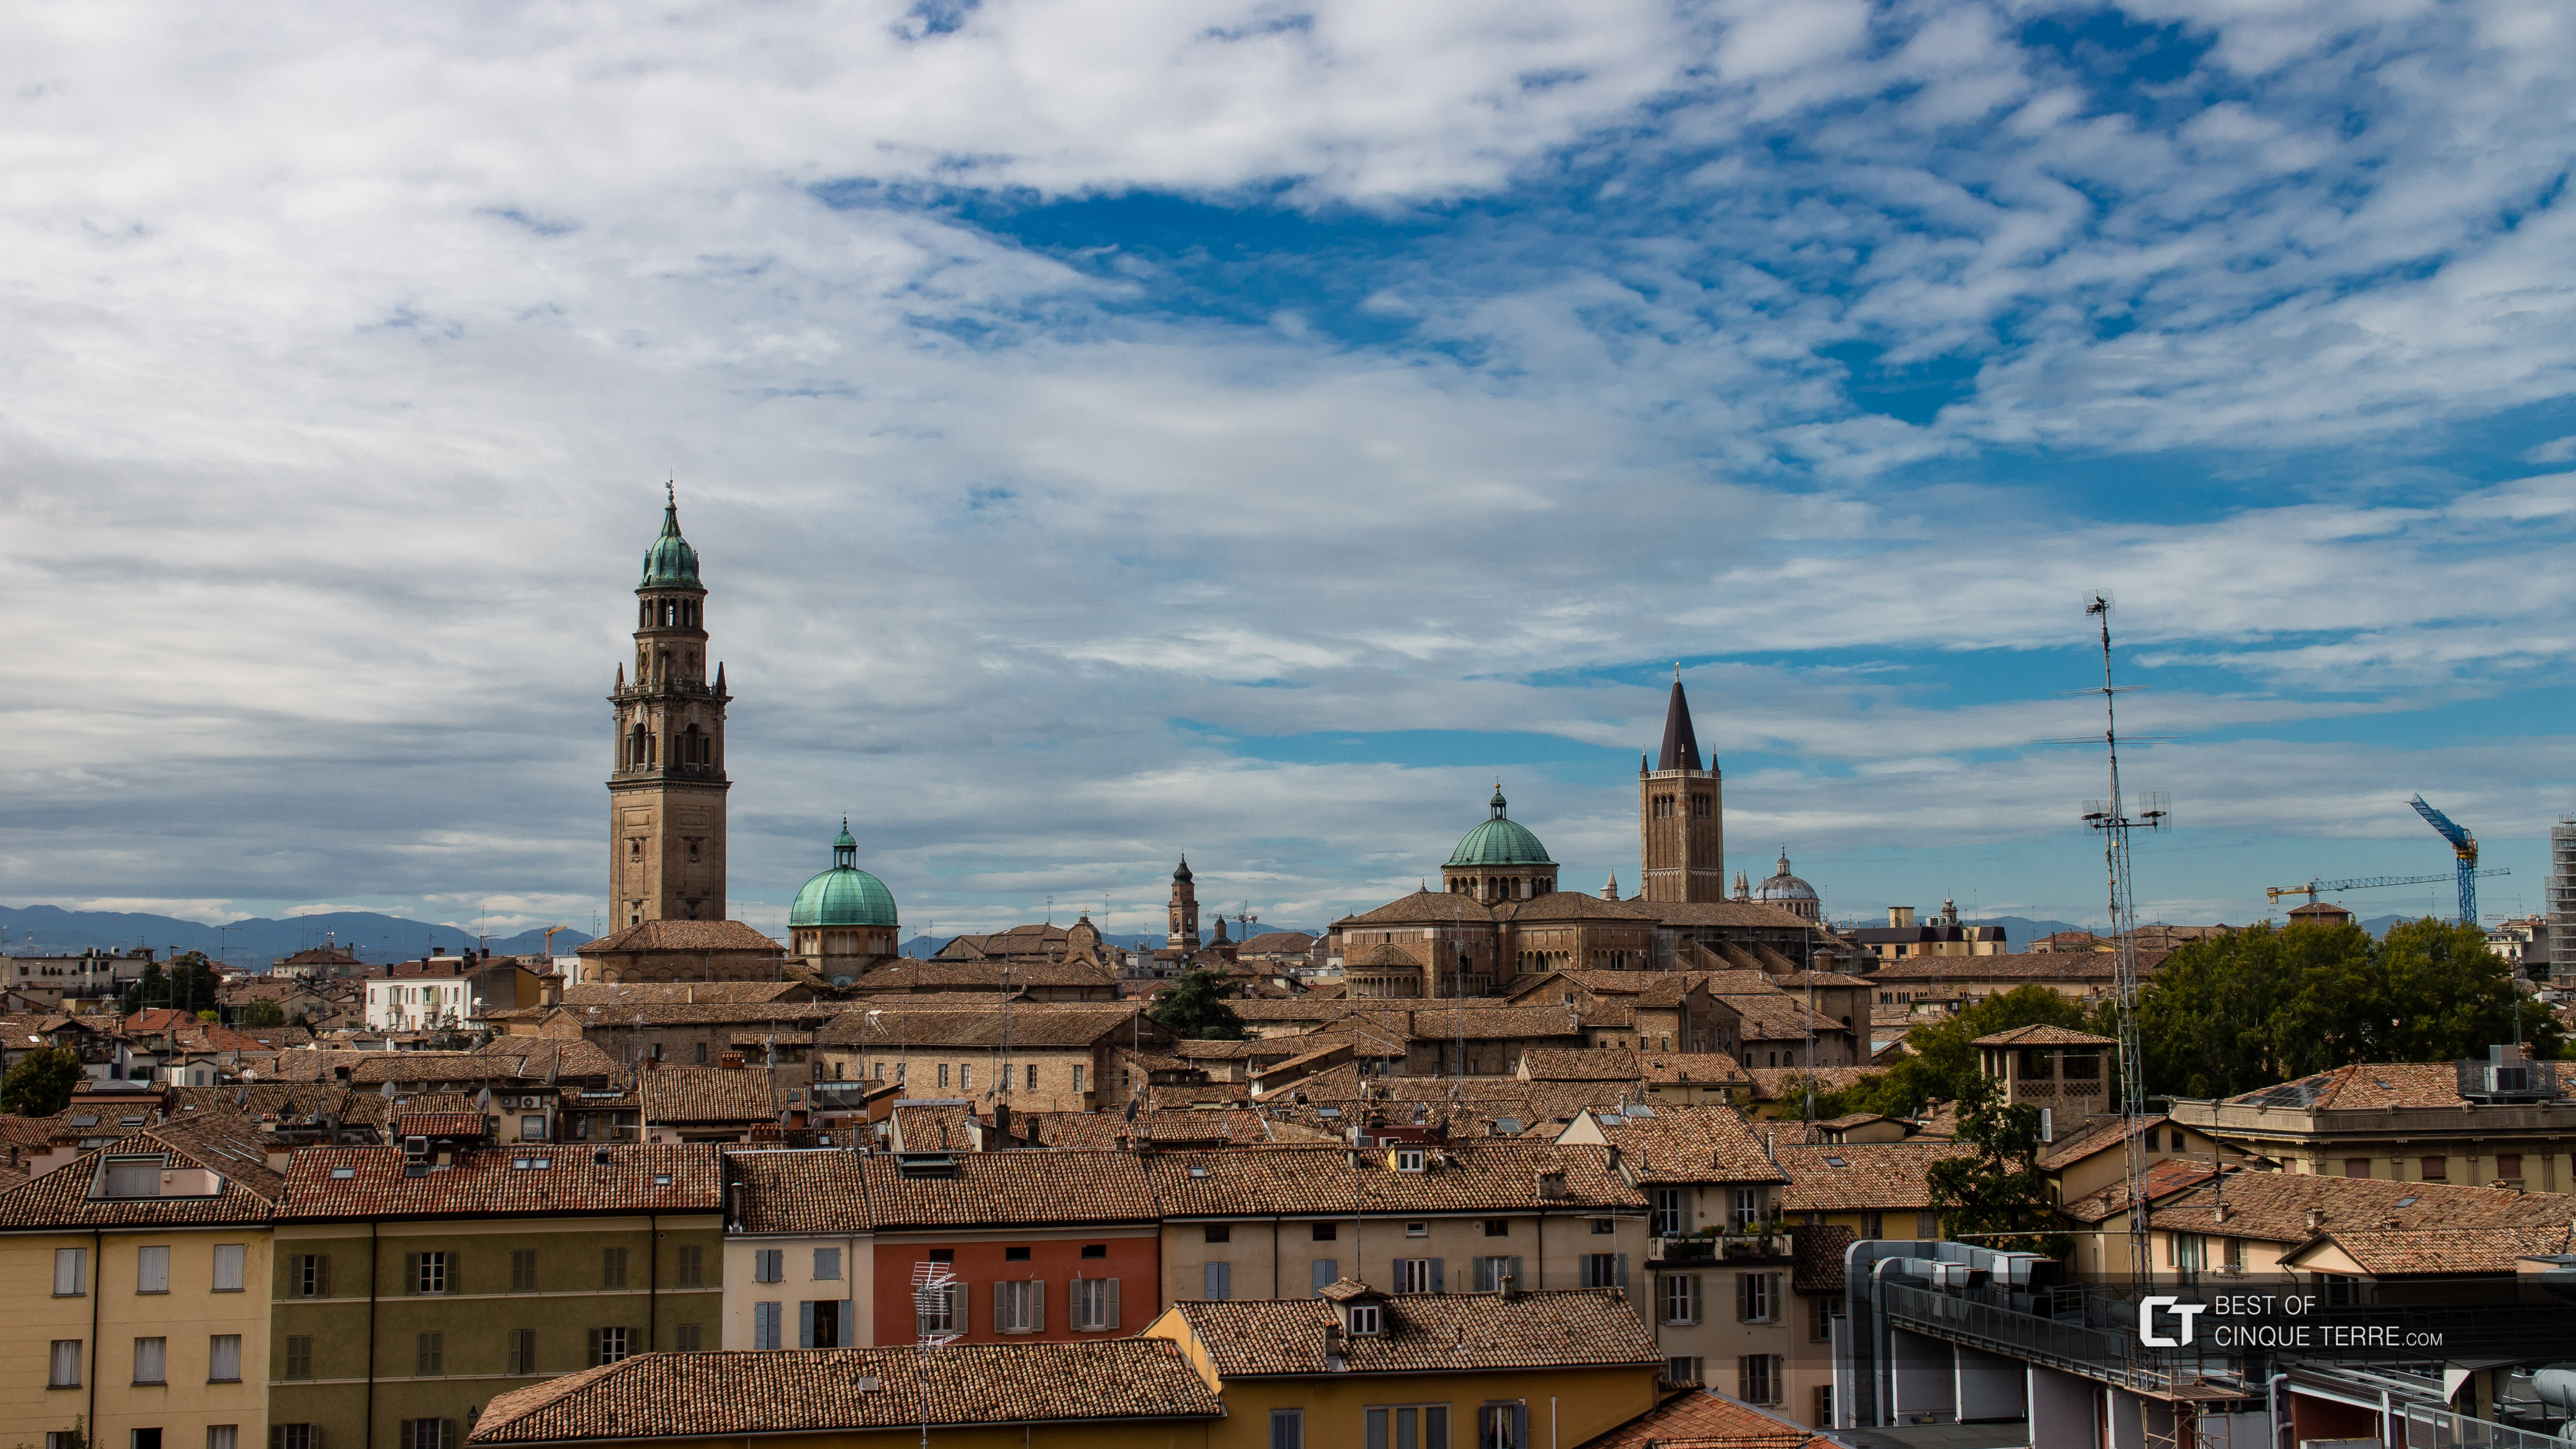 Acoperișuri în centrul istoric al orașului, Parma, Italia